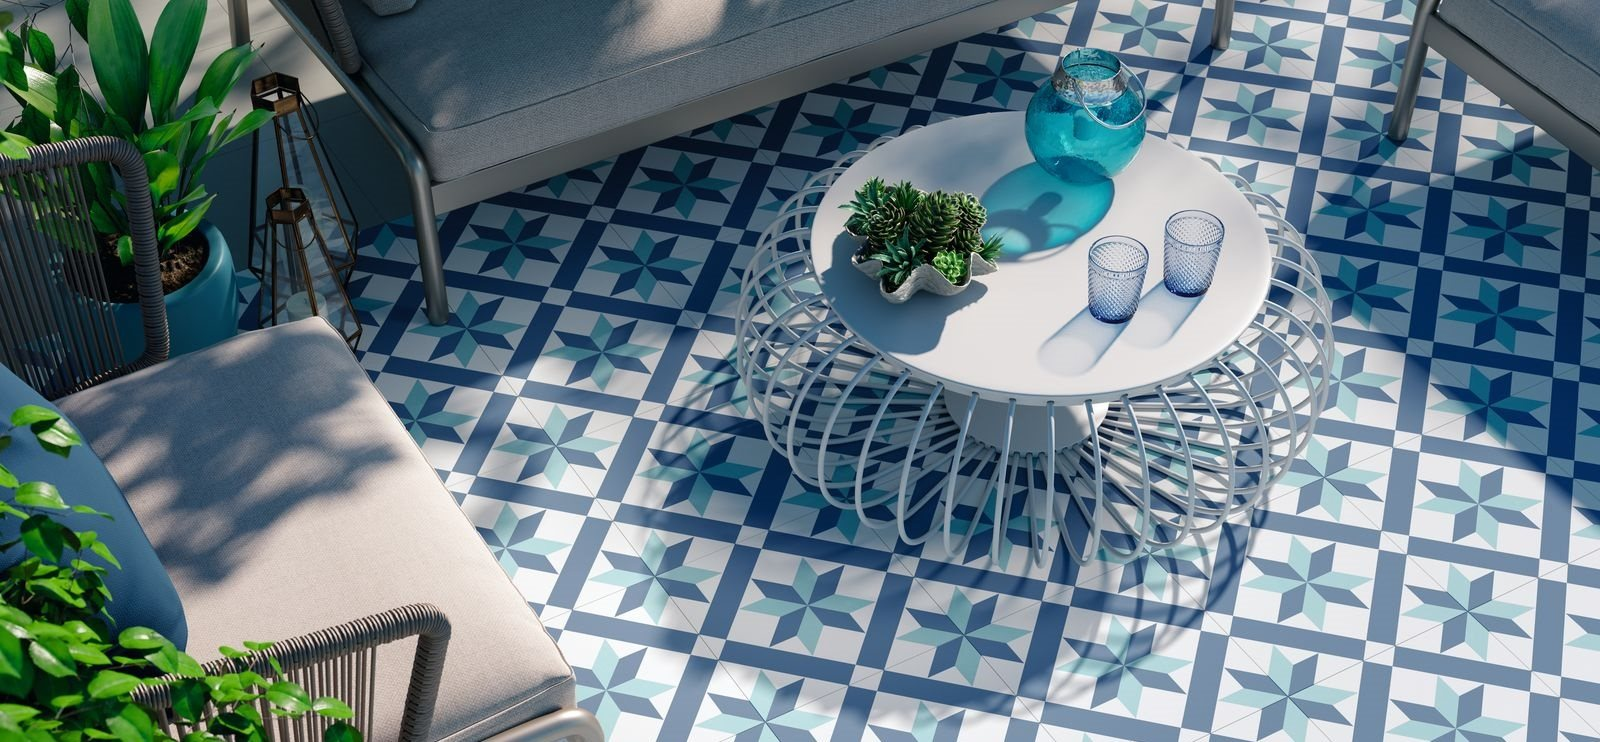 Carreau de ciment bleu et blanc motifs géométriques 30x30 cm sur terrasse avec mobilier gris et plantes